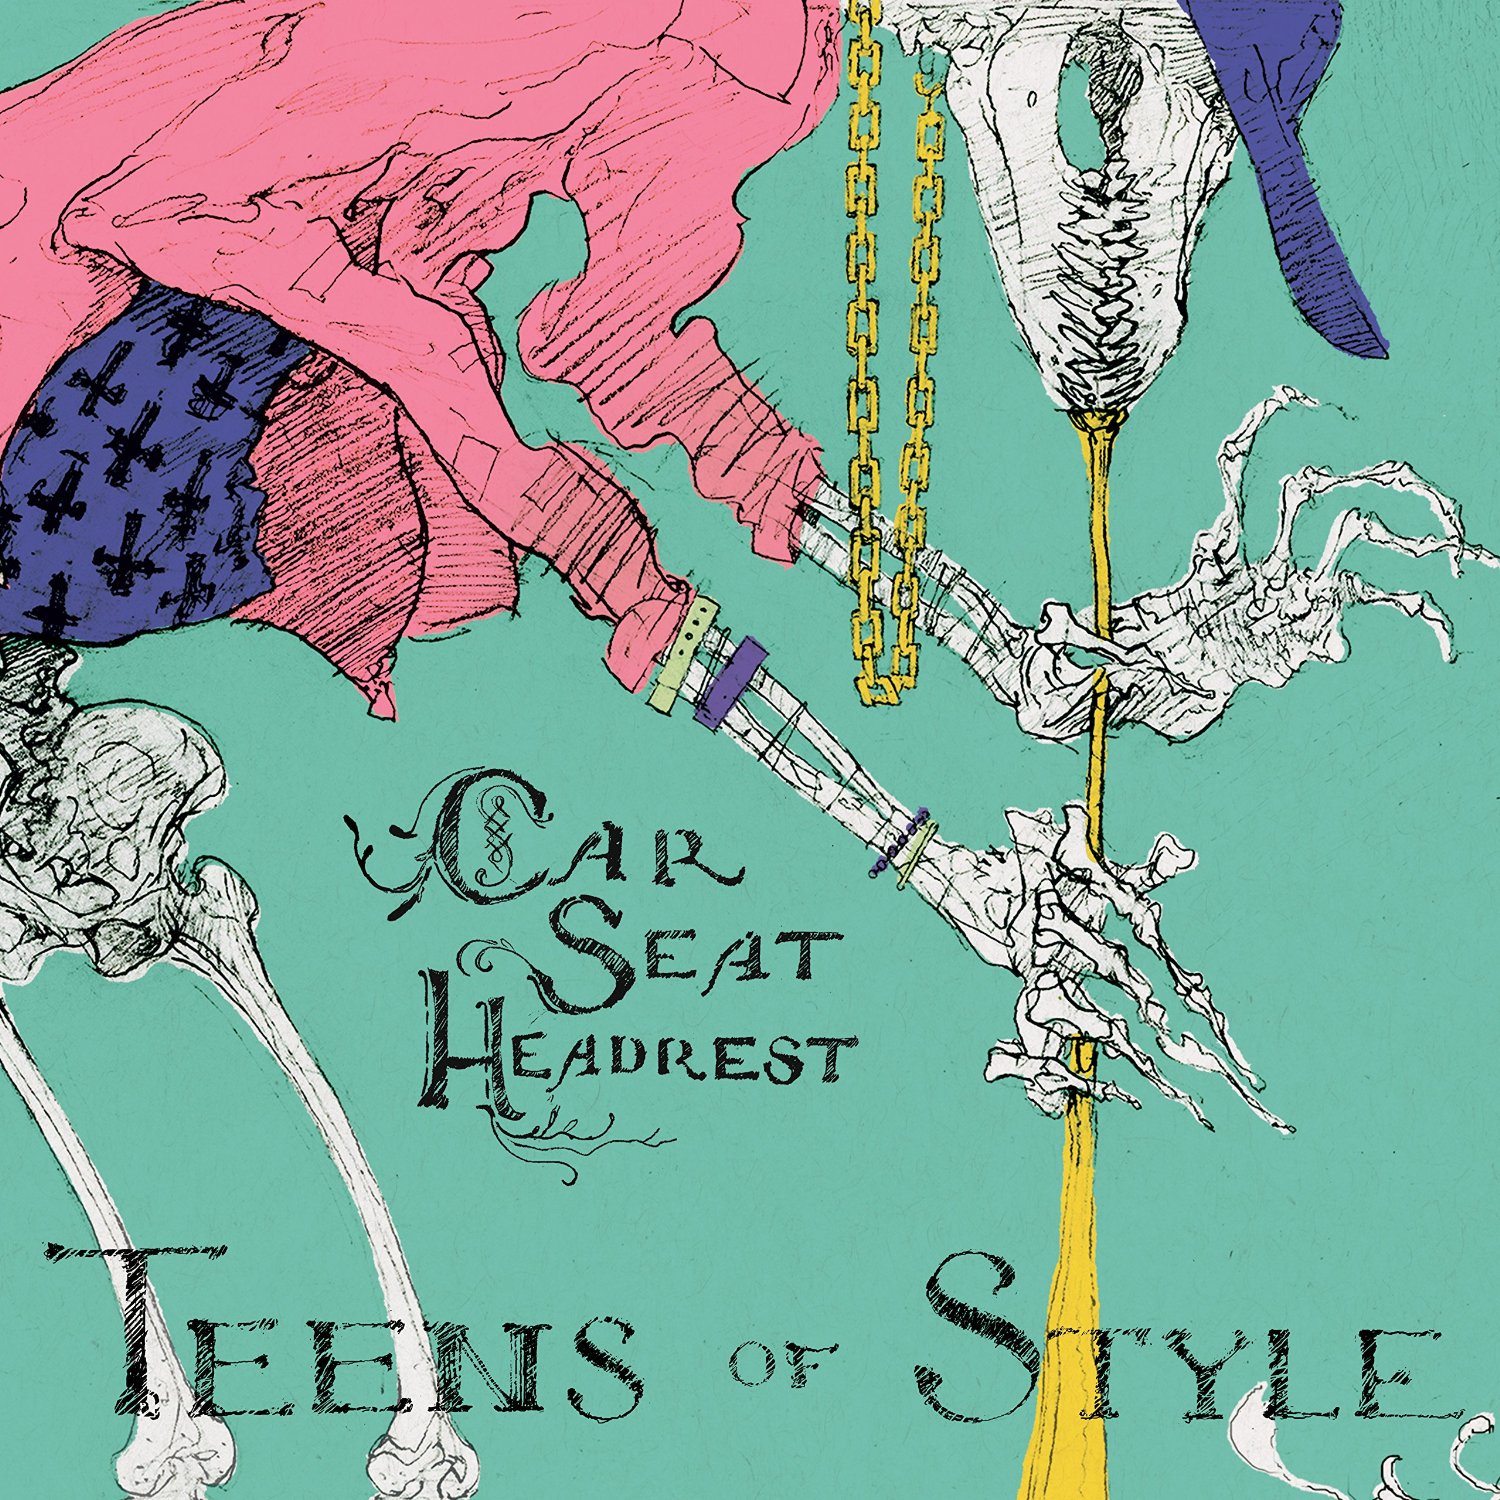 Vinile Car Seat Headrest - Teens Of Style NUOVO SIGILLATO, EDIZIONE DEL 30/10/2015 SUBITO DISPONIBILE